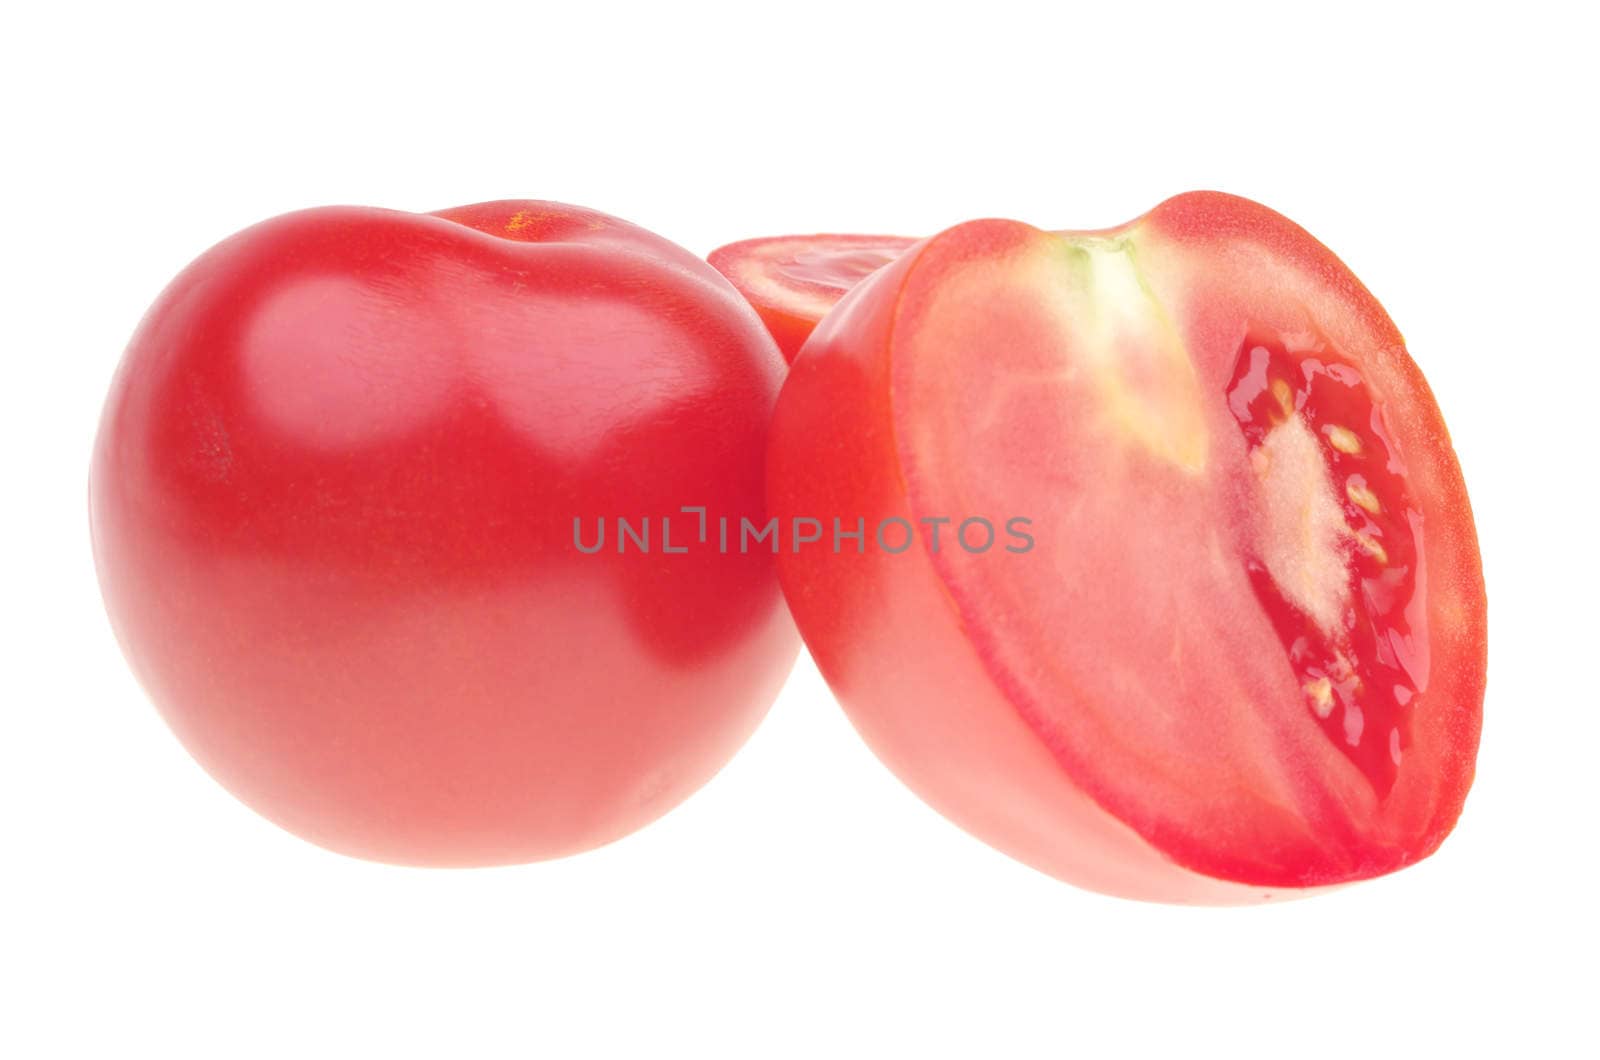 Ripe red tomato and half over white